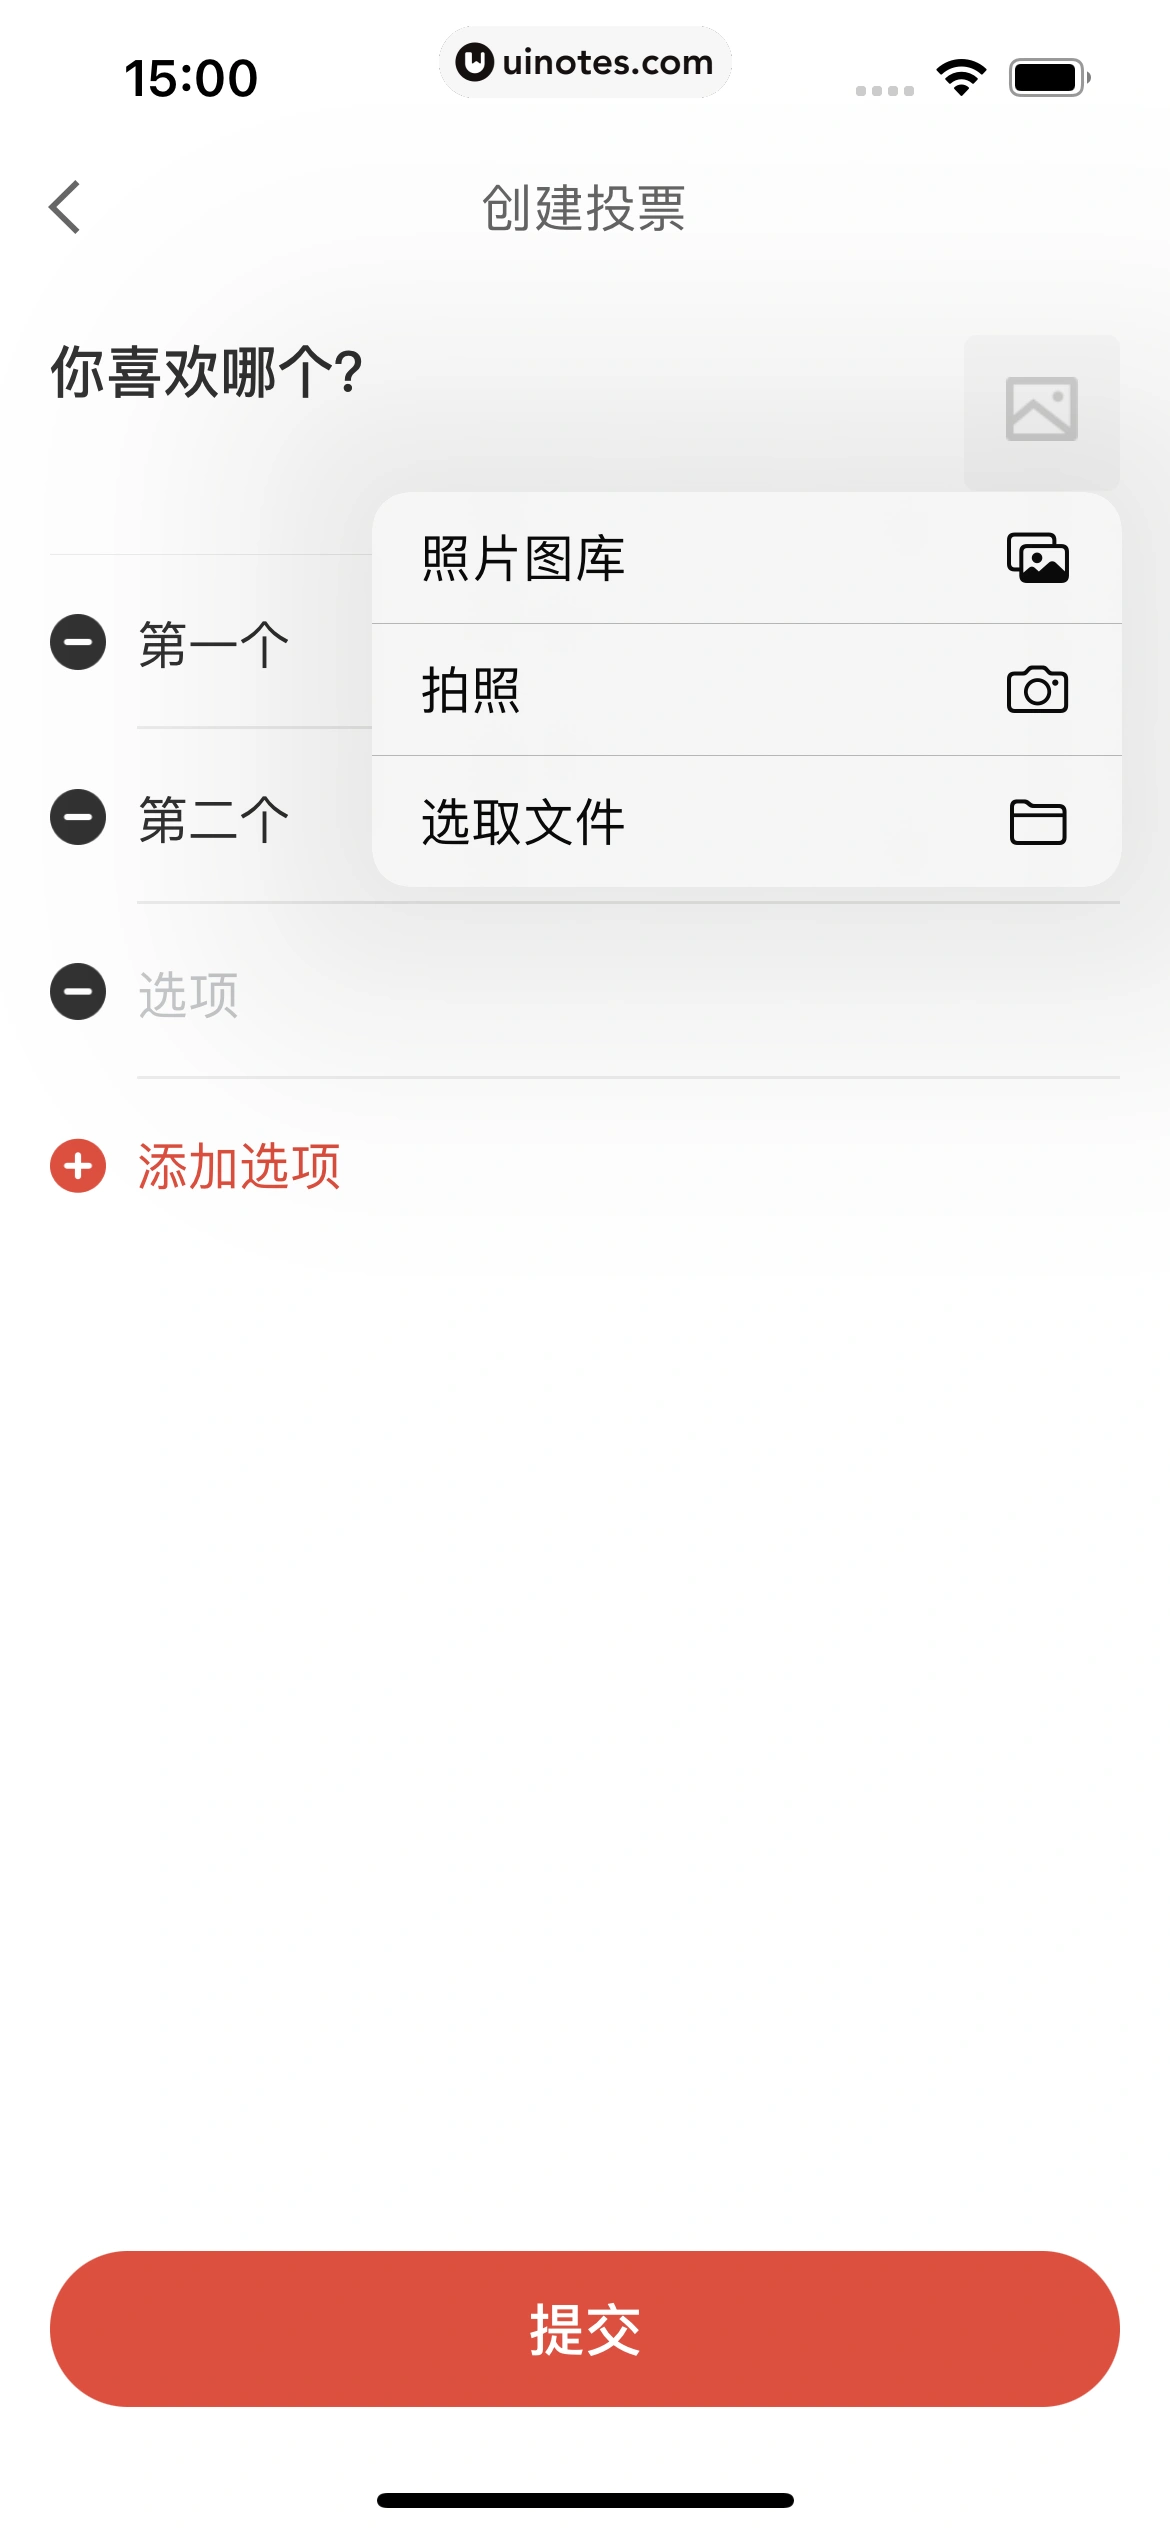 京东金融 App 截图 124 - UI Notes